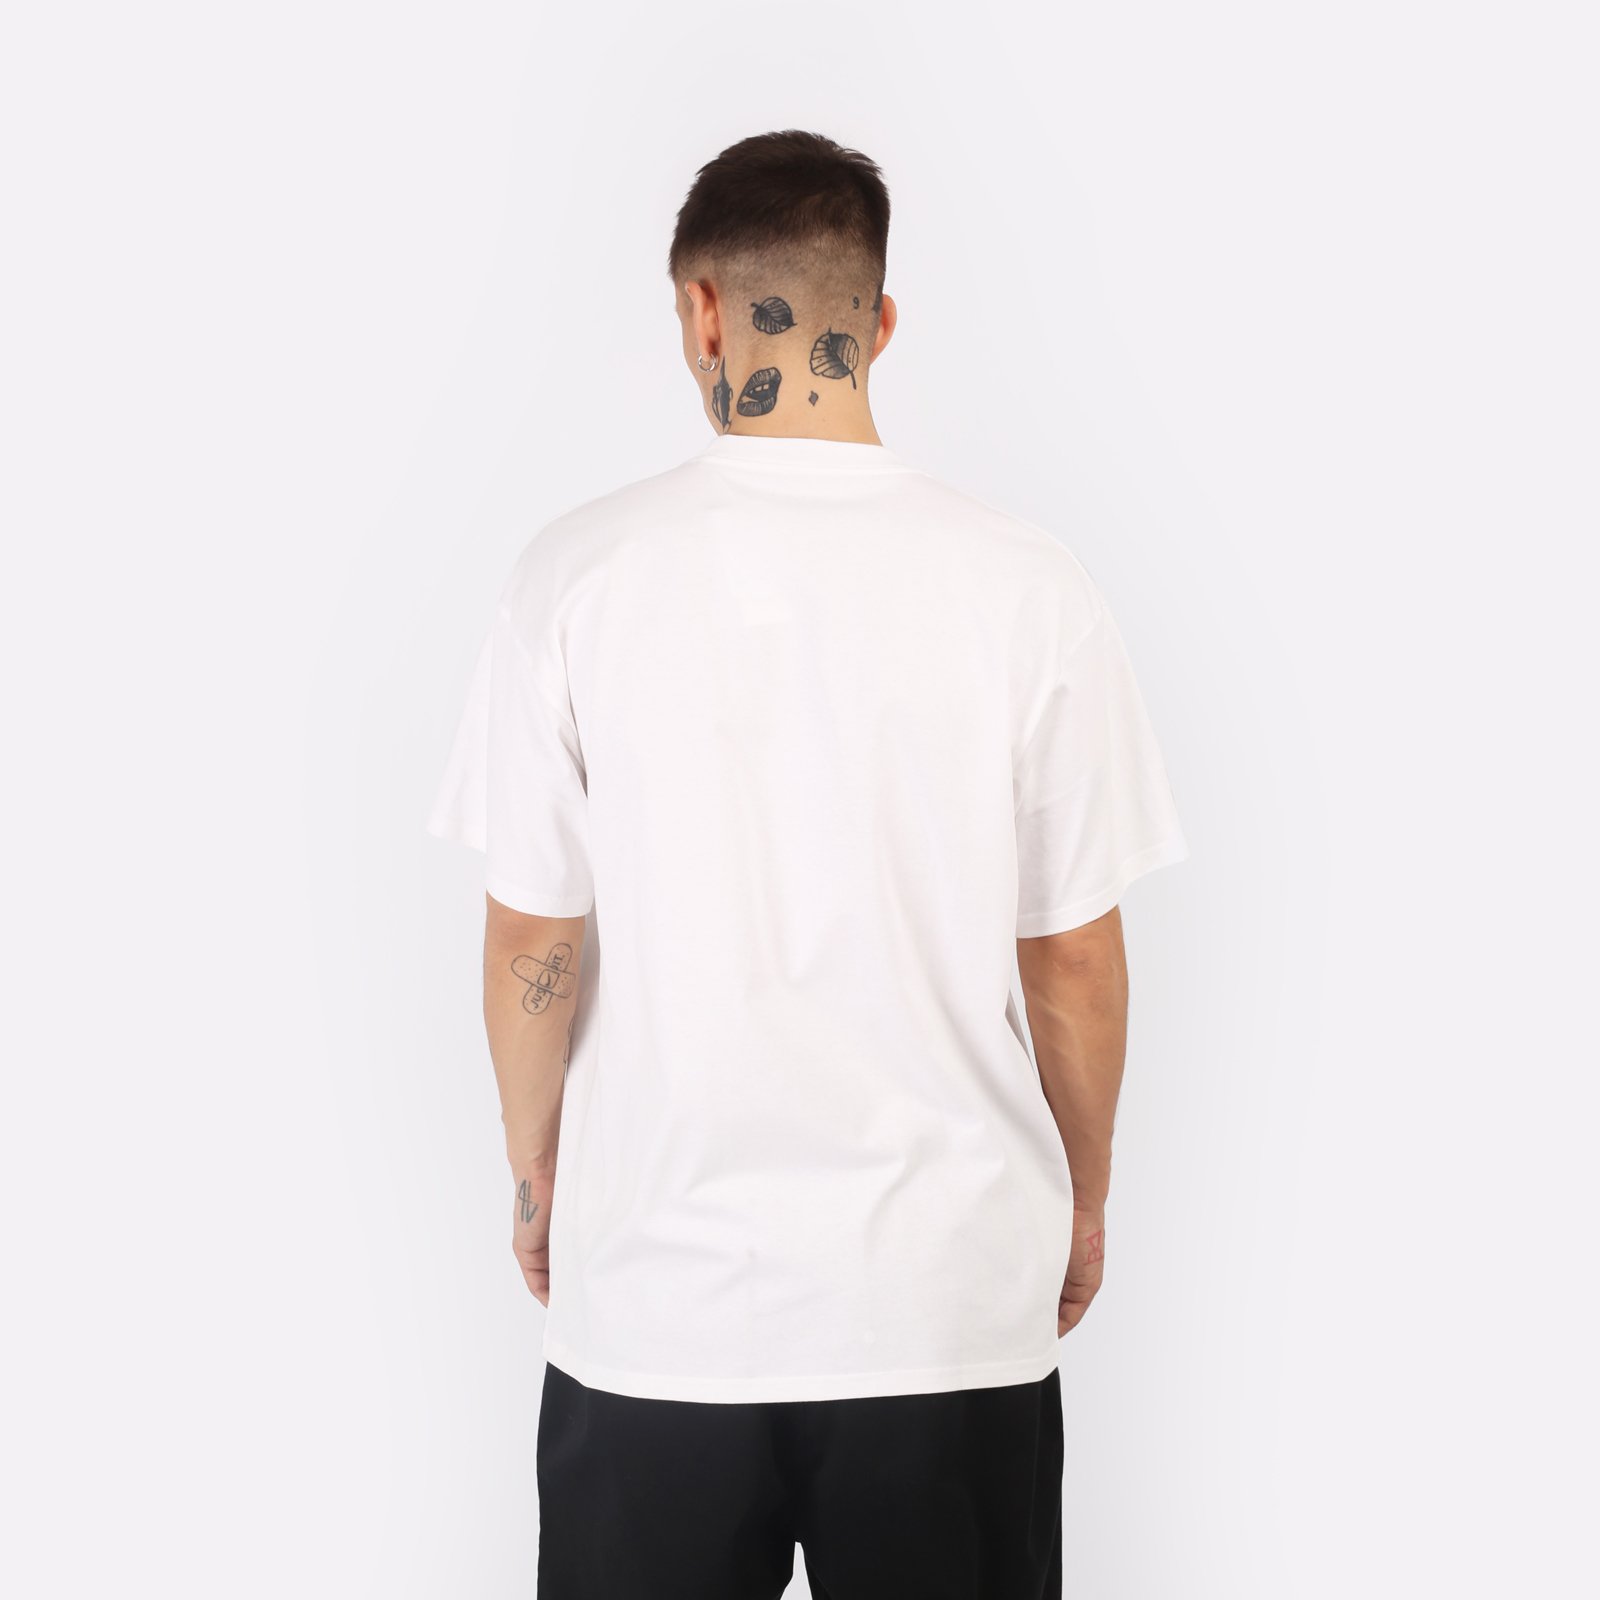 мужская футболка Carhartt WIP S/S University T-Shirt  (I028990-white/black)  - цена, описание, фото 2